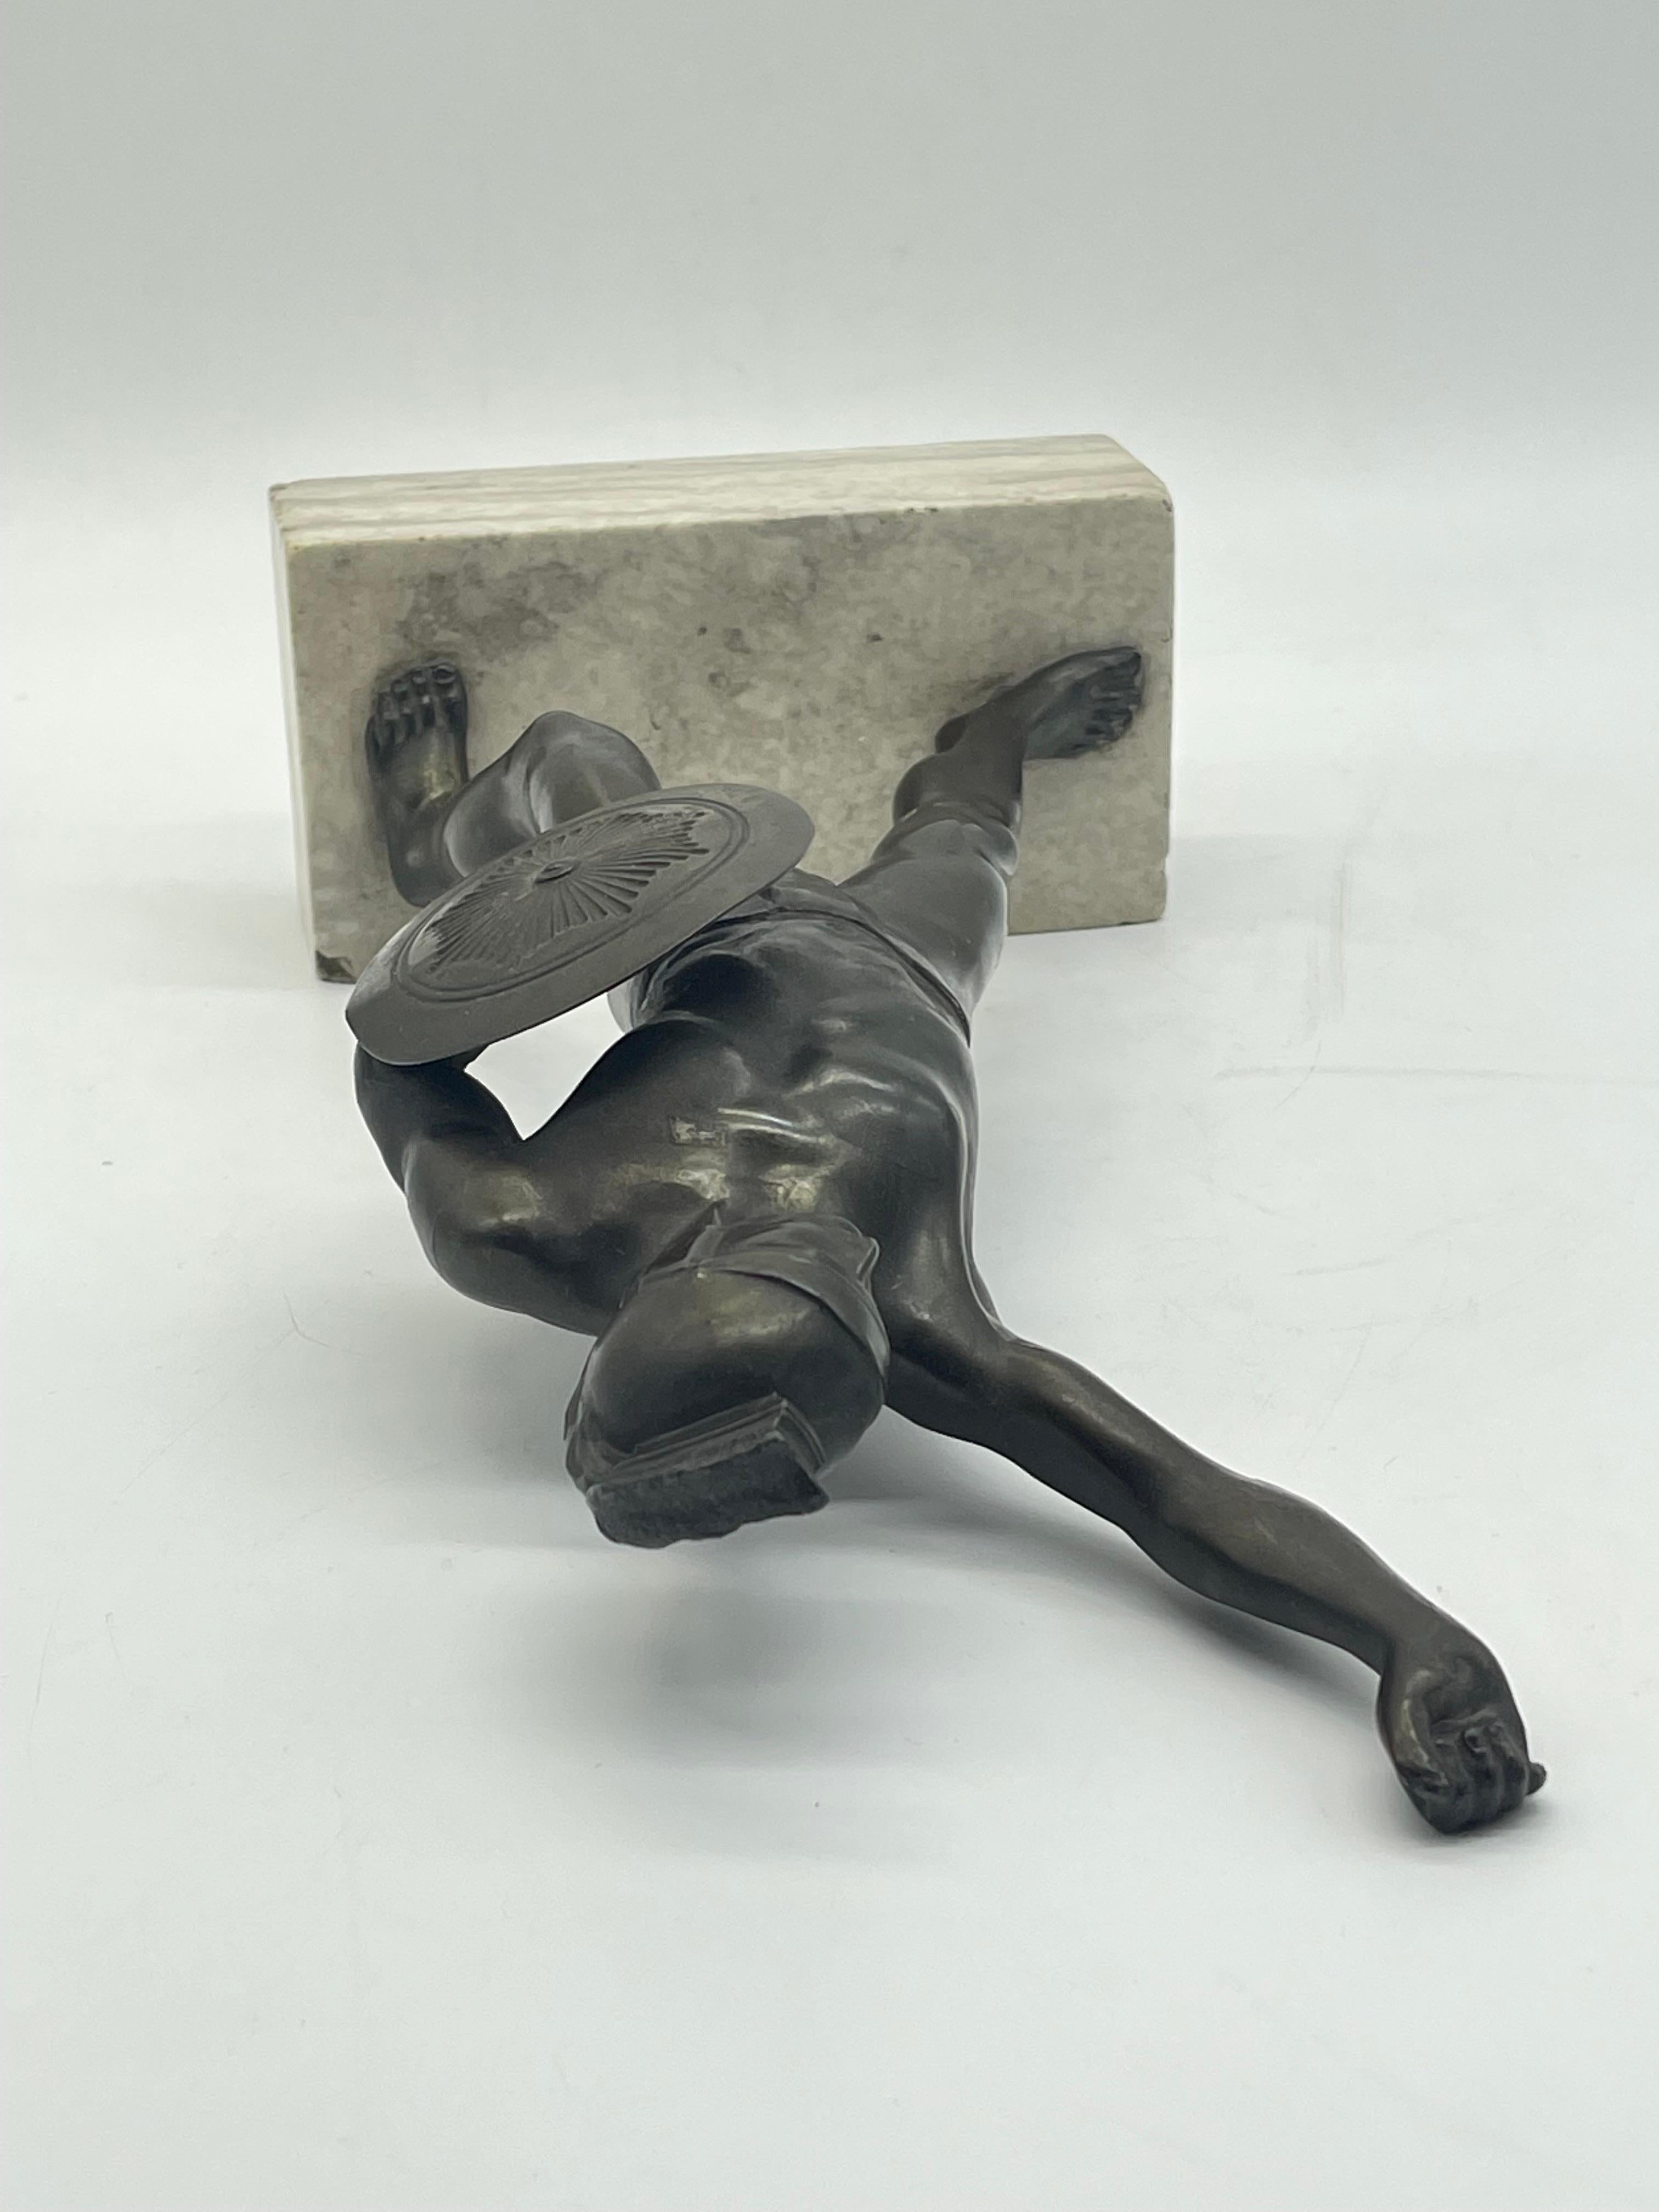 Athletic Bronze-Krieger-Skulptur eines Kriegers auf Marmorsockels, griechische Figur mit Schild im Angebot 10